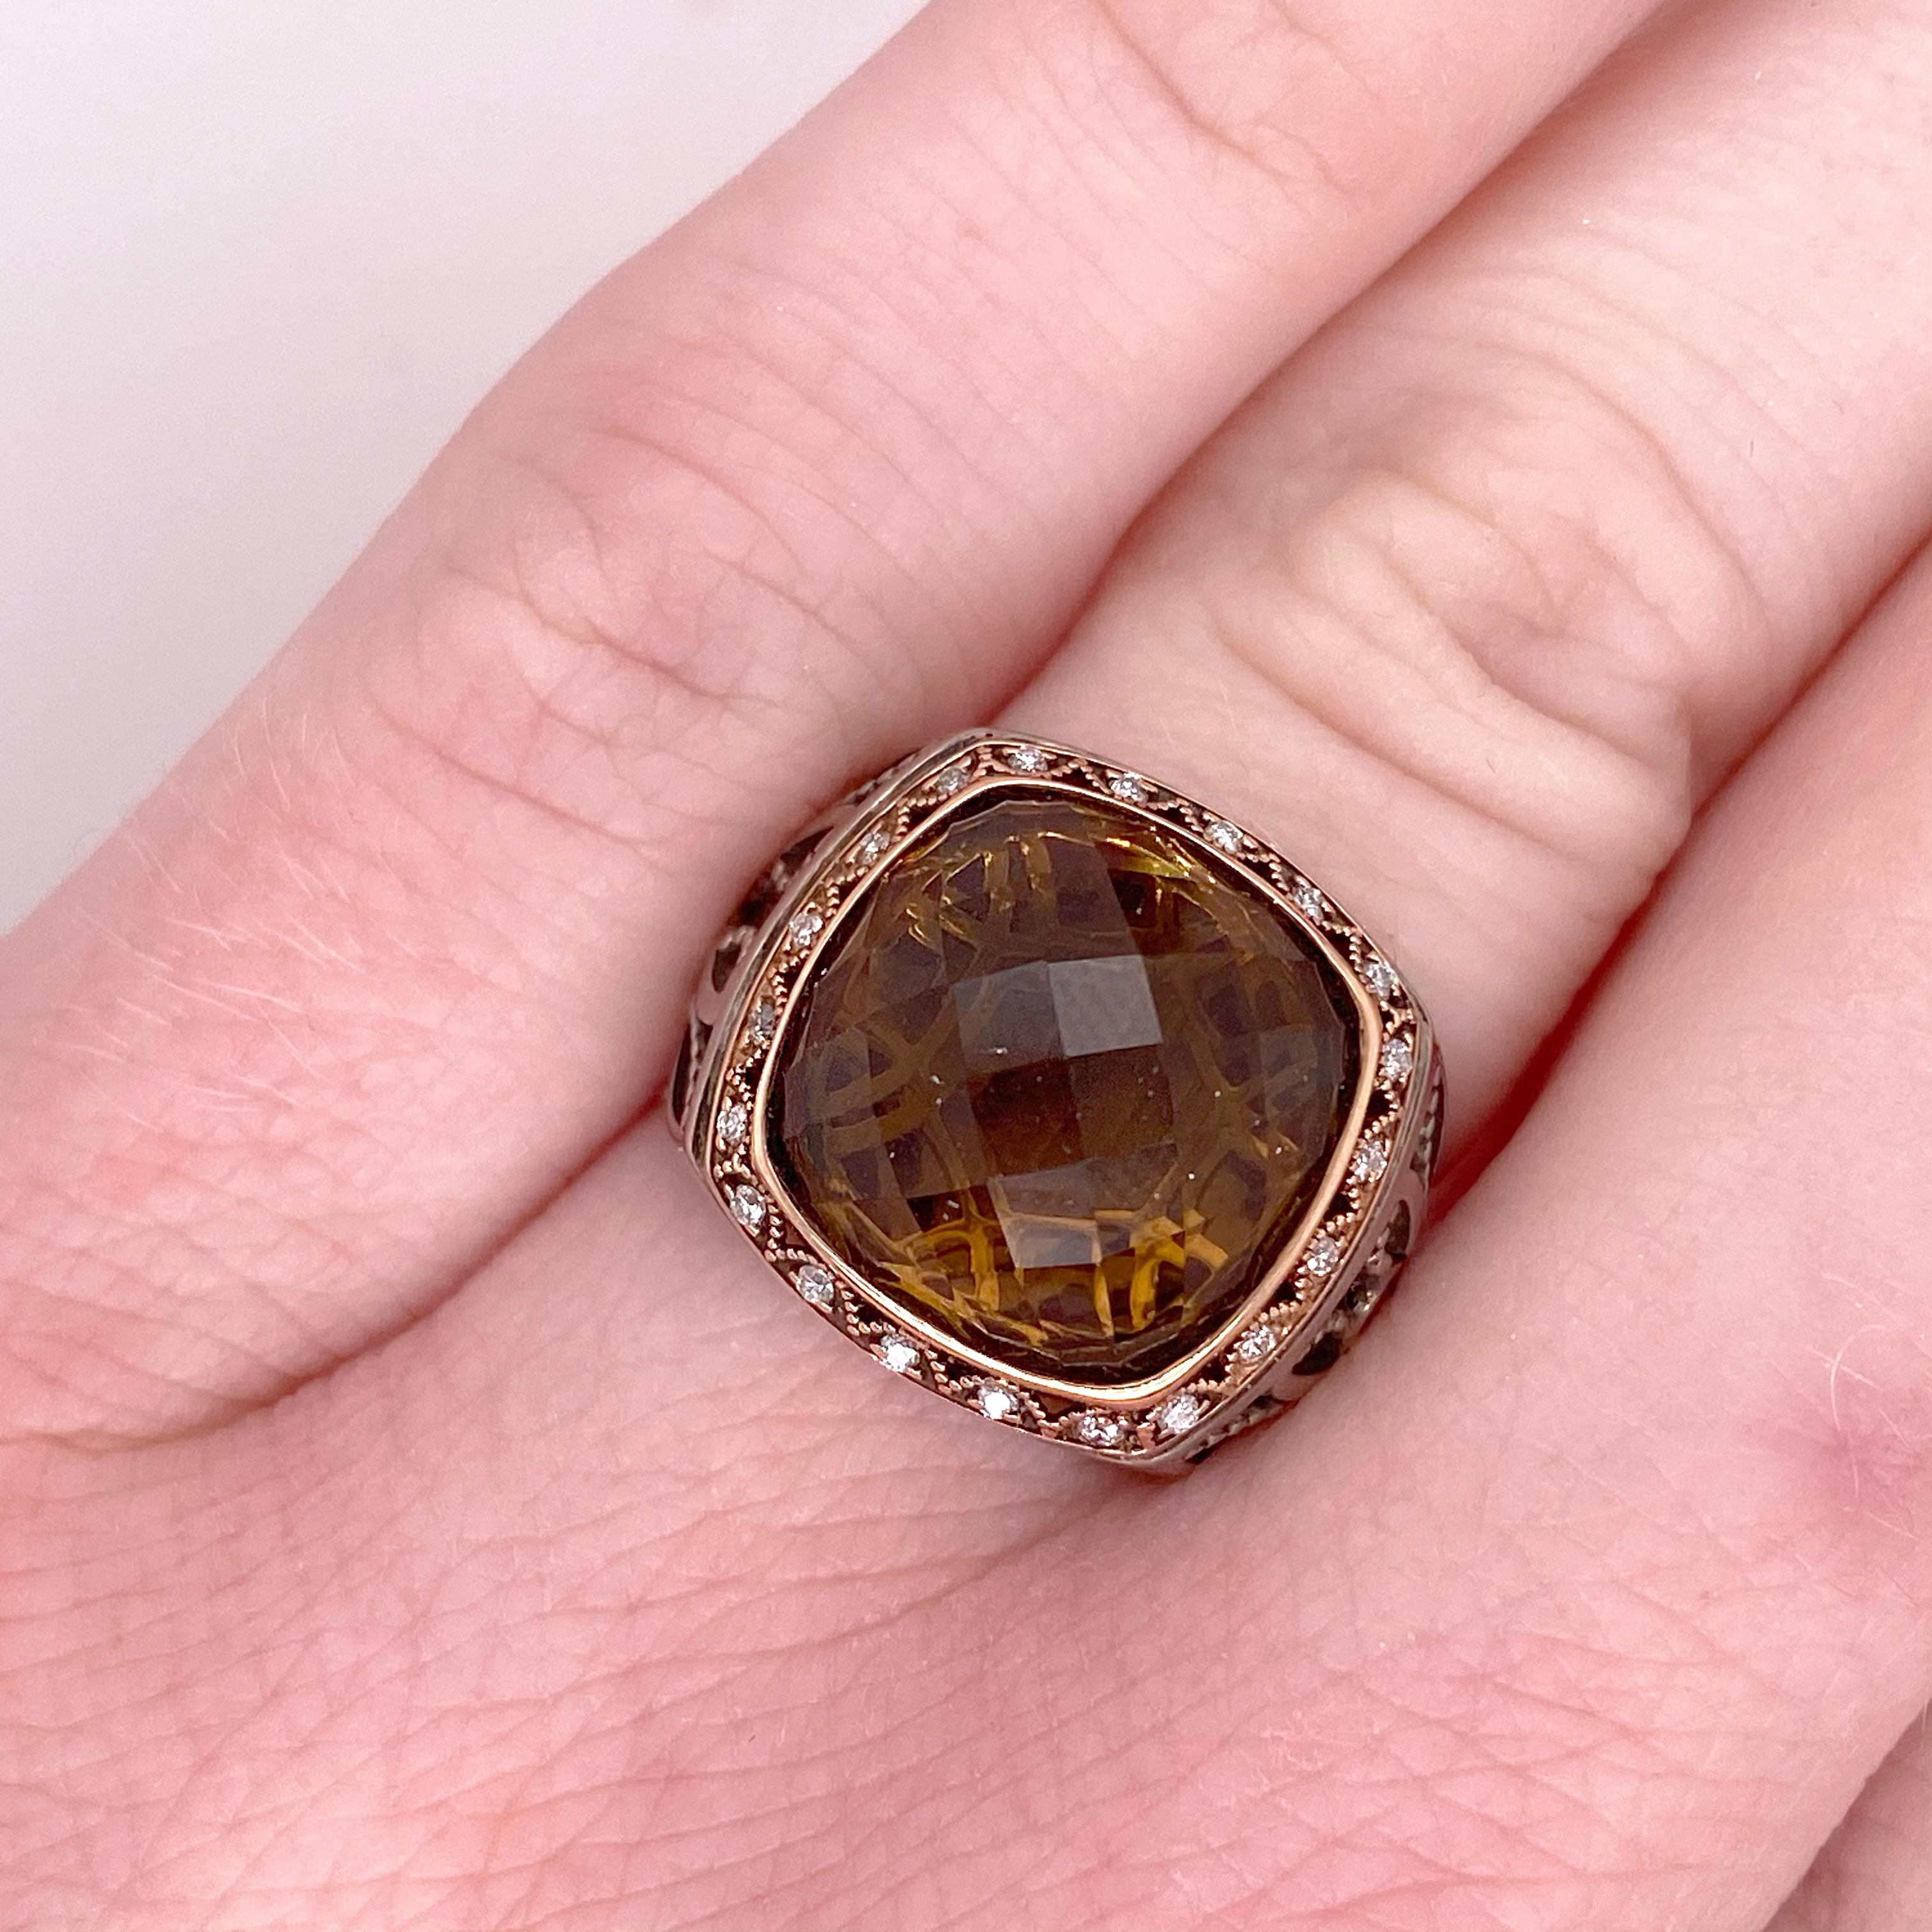 Authentische Tacori echte Cognac Quarz Ring-SR104.  Größe 6, fällt aber groß aus.  Er hat das schöne Detail der Halbmonde, die den kissenförmigen, echten Edelstein umgeben.  Die diamantbesetzte Lünette ist aus reinem 18-karätigem Roségold gefertigt,